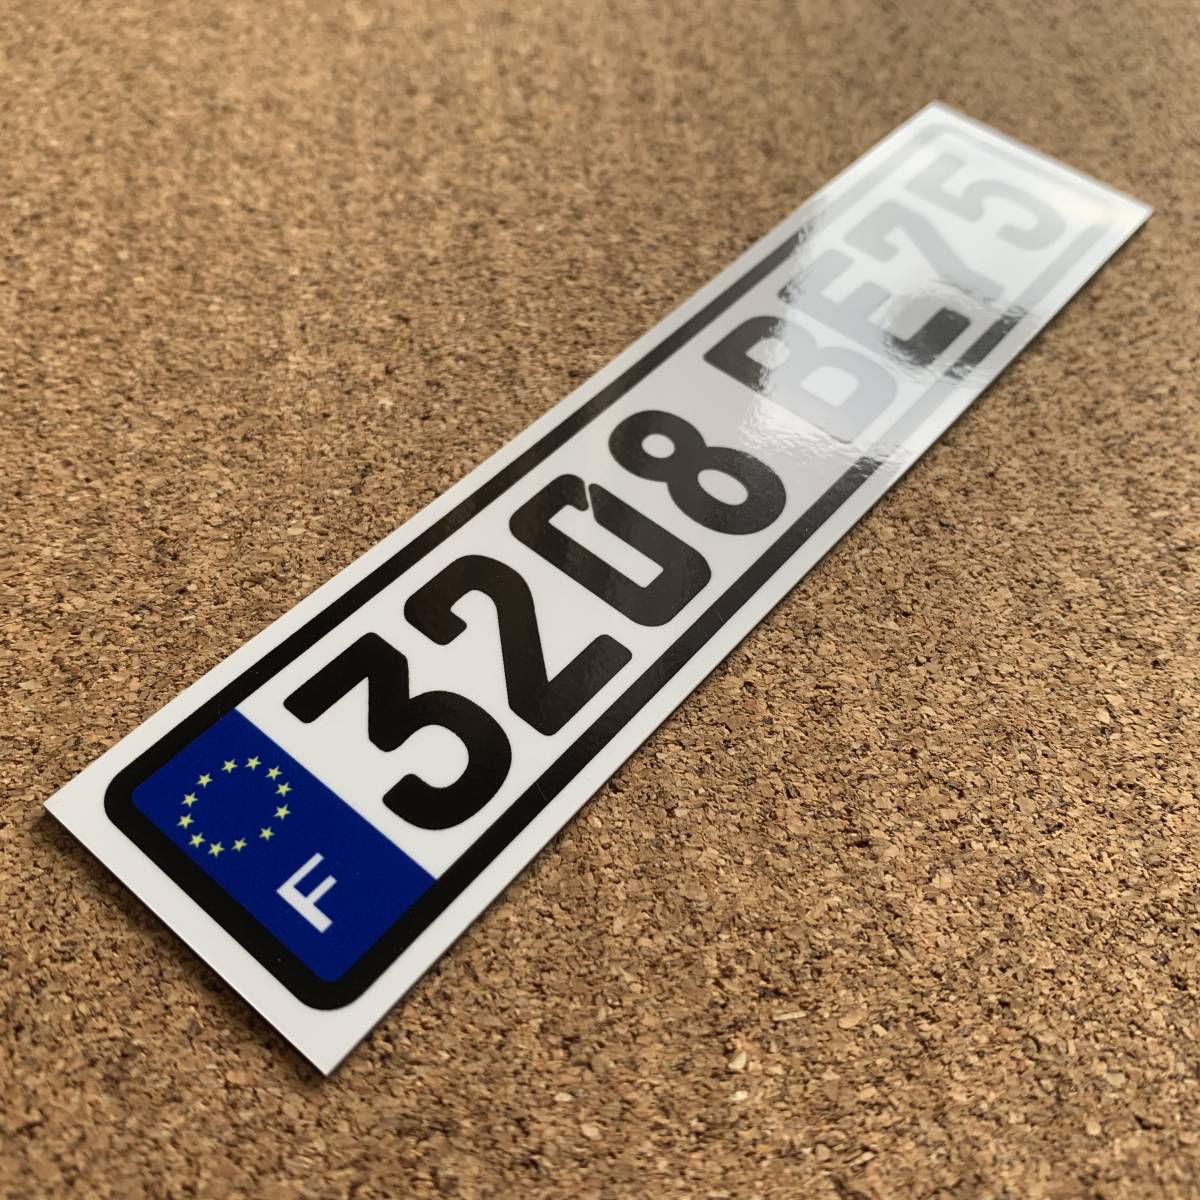 * Mini размер * евро plate стикер * желающий номер указание возможность!14cm размер номерная табличка Германия Volkswagen Benz BMW EU